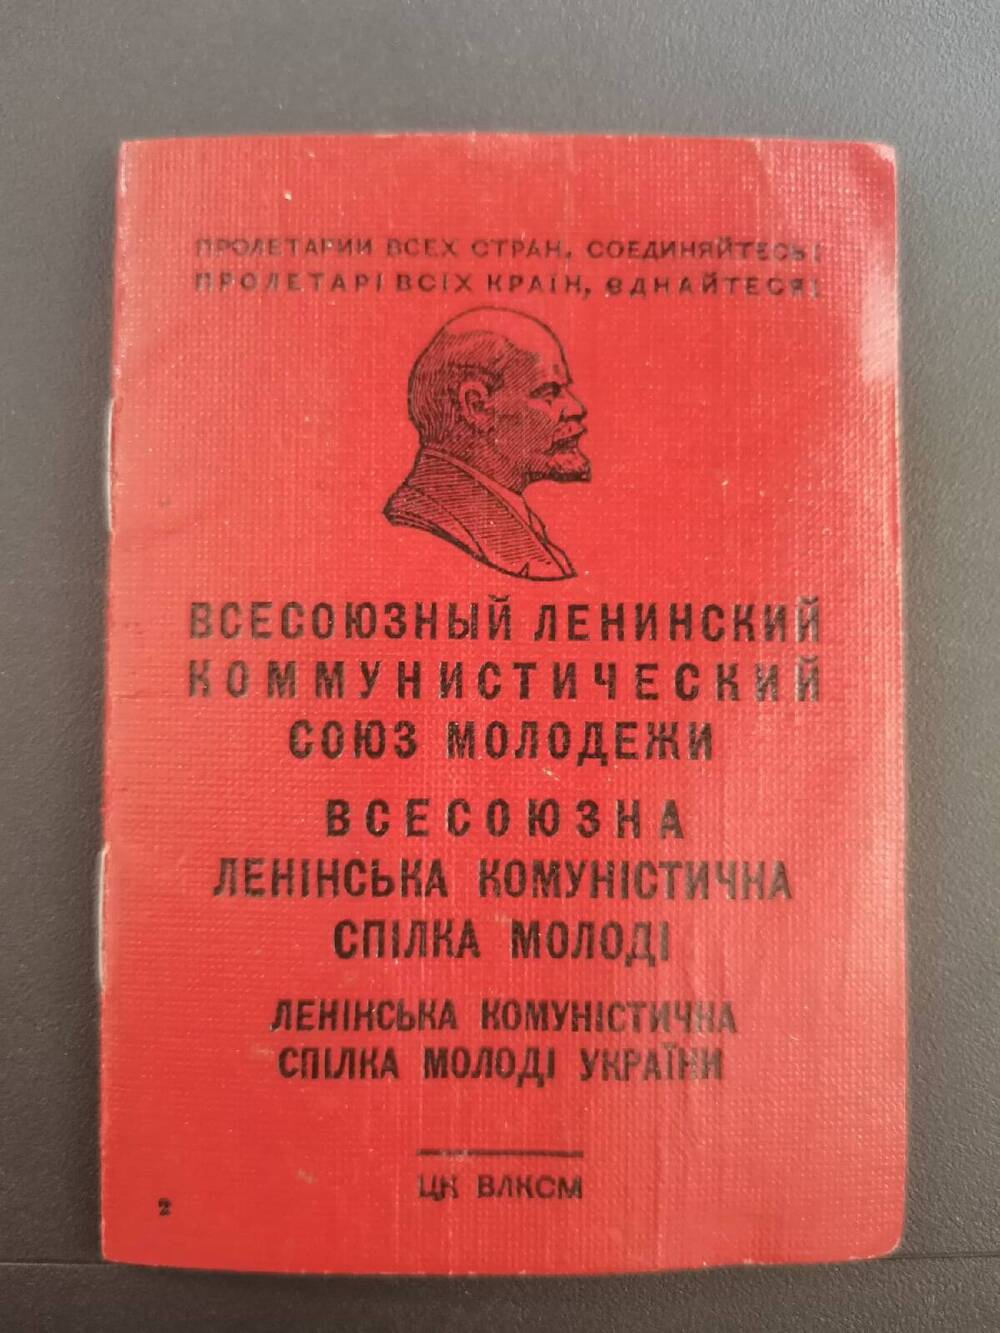 Комсомольский билет № 18734387 на имя Лисачёва Николая Григорьевича.